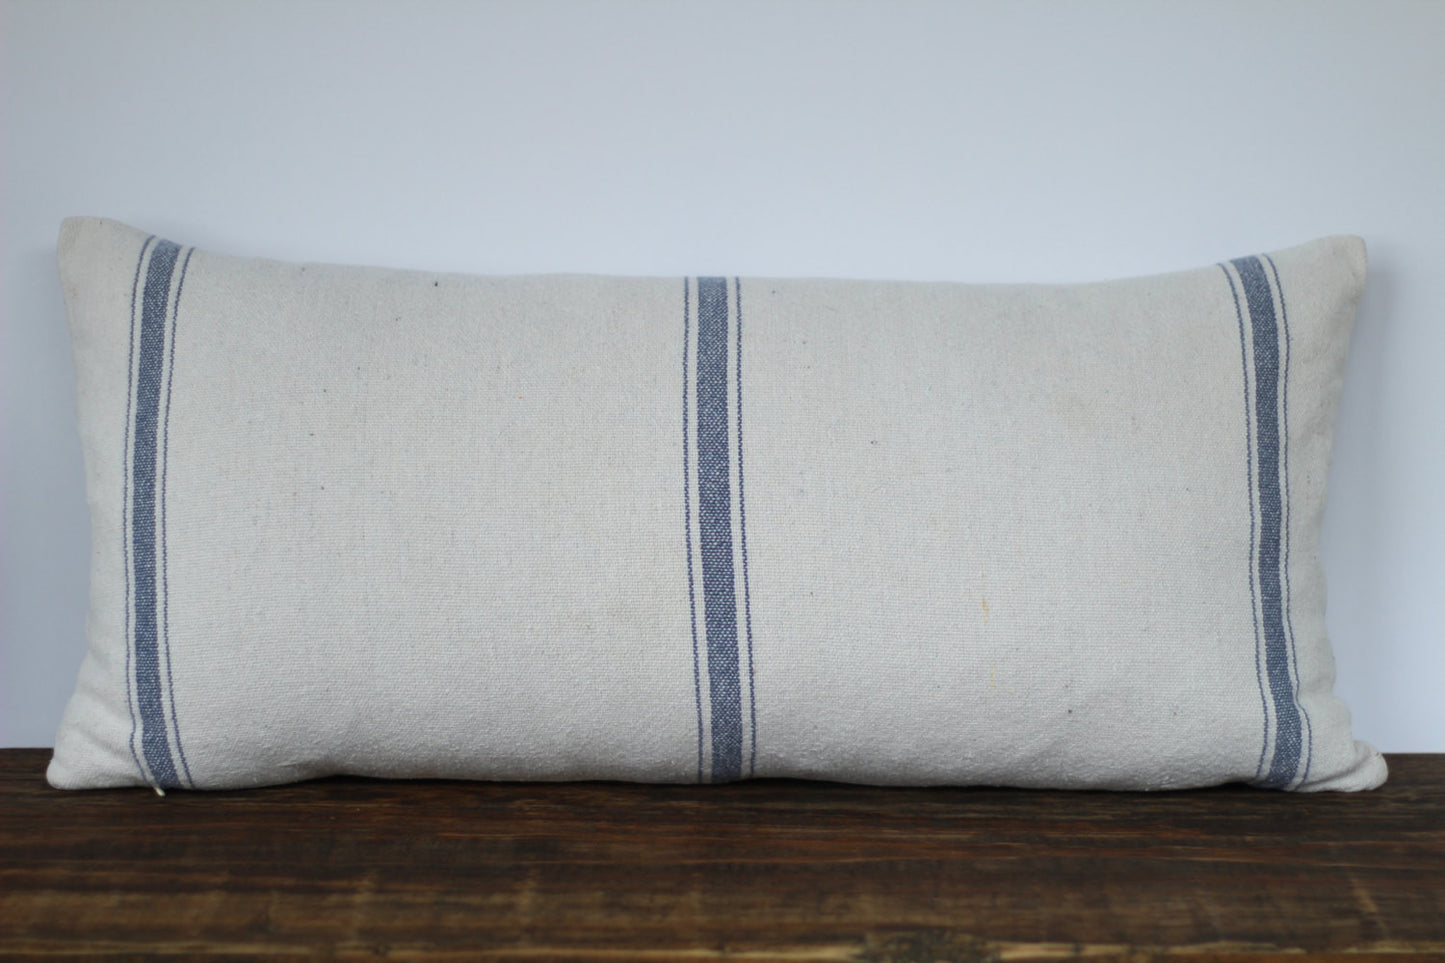 Grain Sack Fabric Lumbar Pillow Cover in Blue or Tan Stripe - Returning Grace Designs